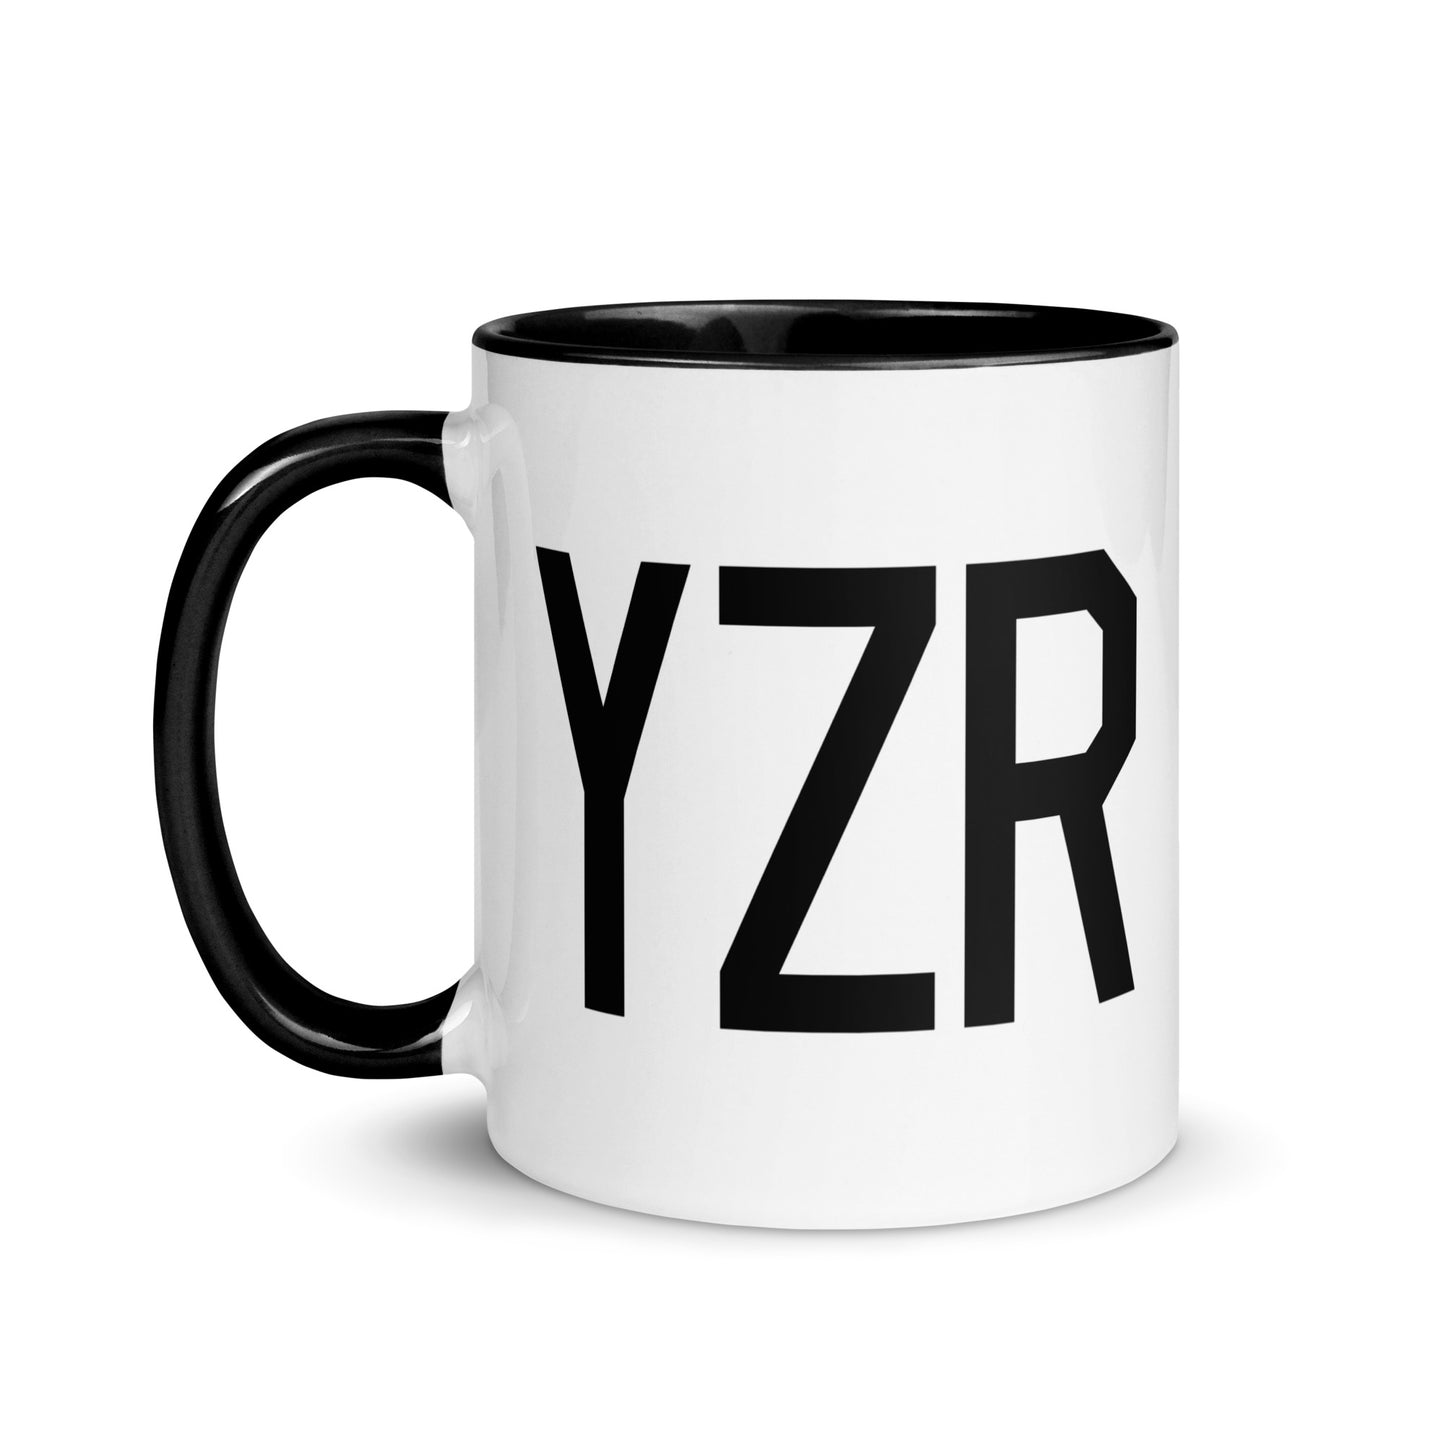 Airport Code Coffee Mug - Black • YZR Sarnia • YHM Designs - Image 03